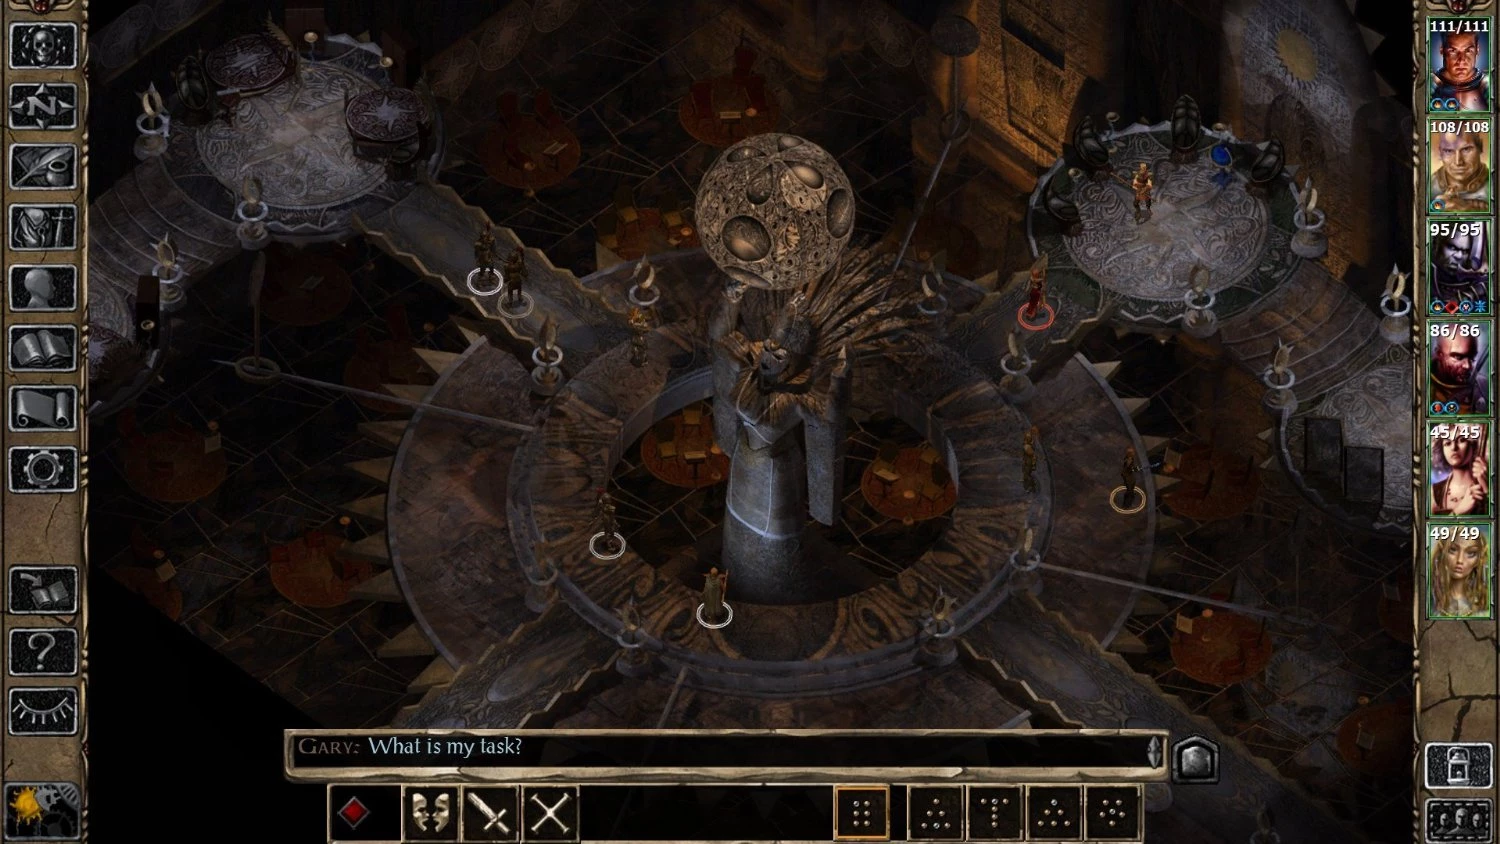 Baldur's Gate 2 Enhanced Edition voor de PC Gaming kopen op nedgame.nl